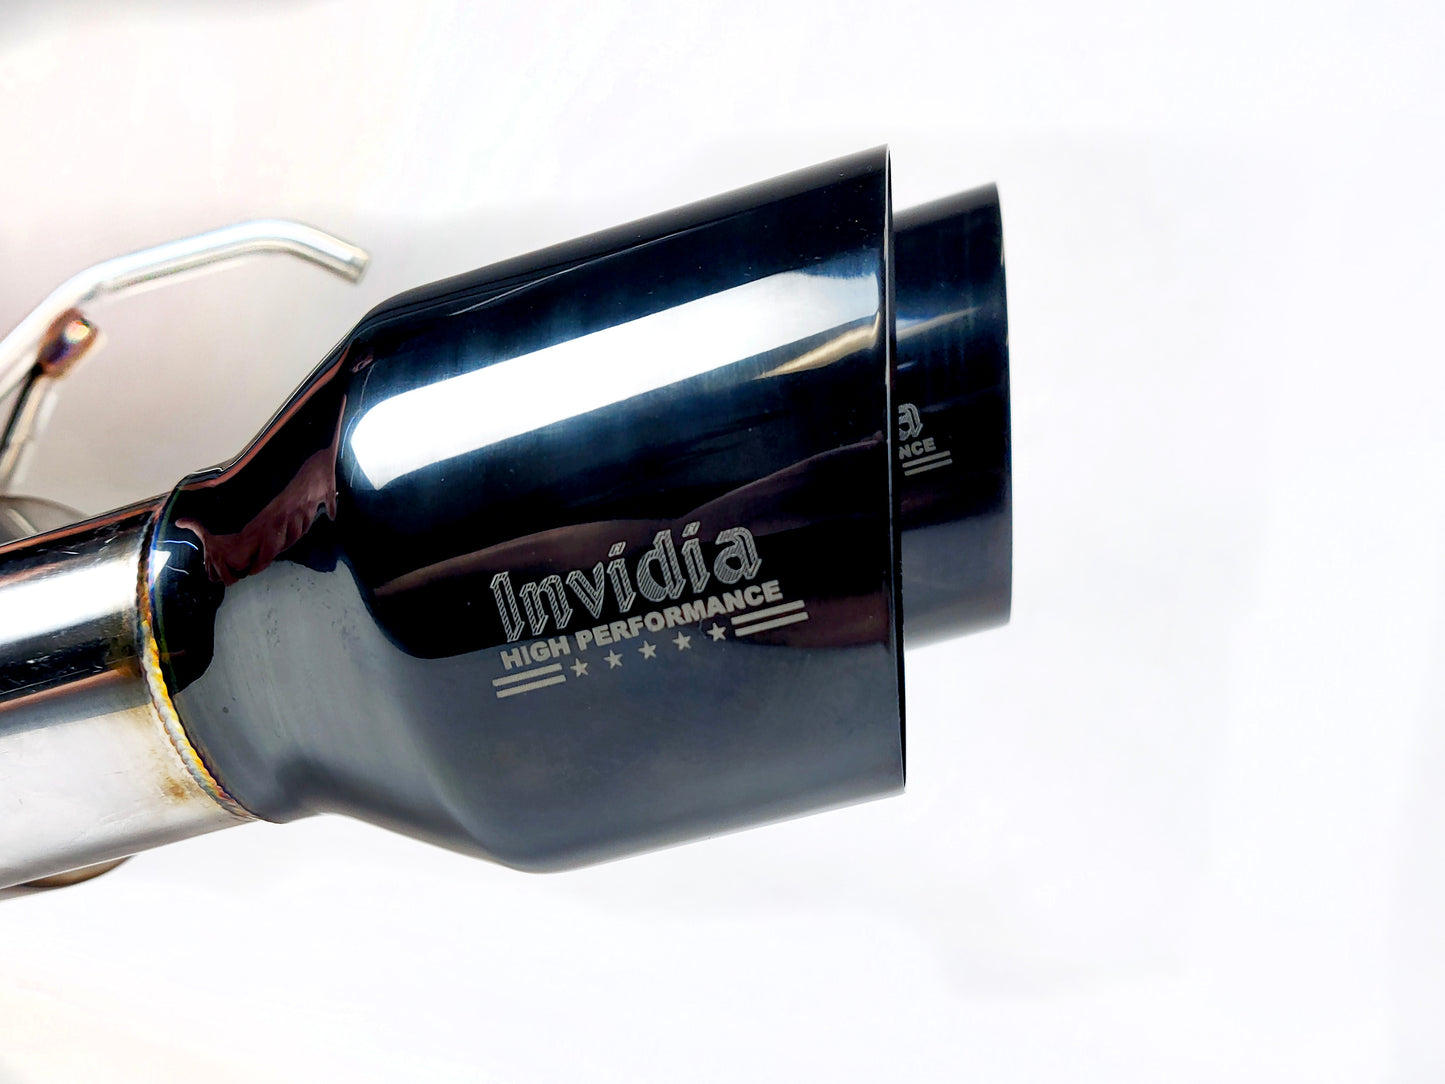 Invidia - R400 "Signature Series" Cat back Exhaust - BLACK Tips (WRX 15-18 Sedan)